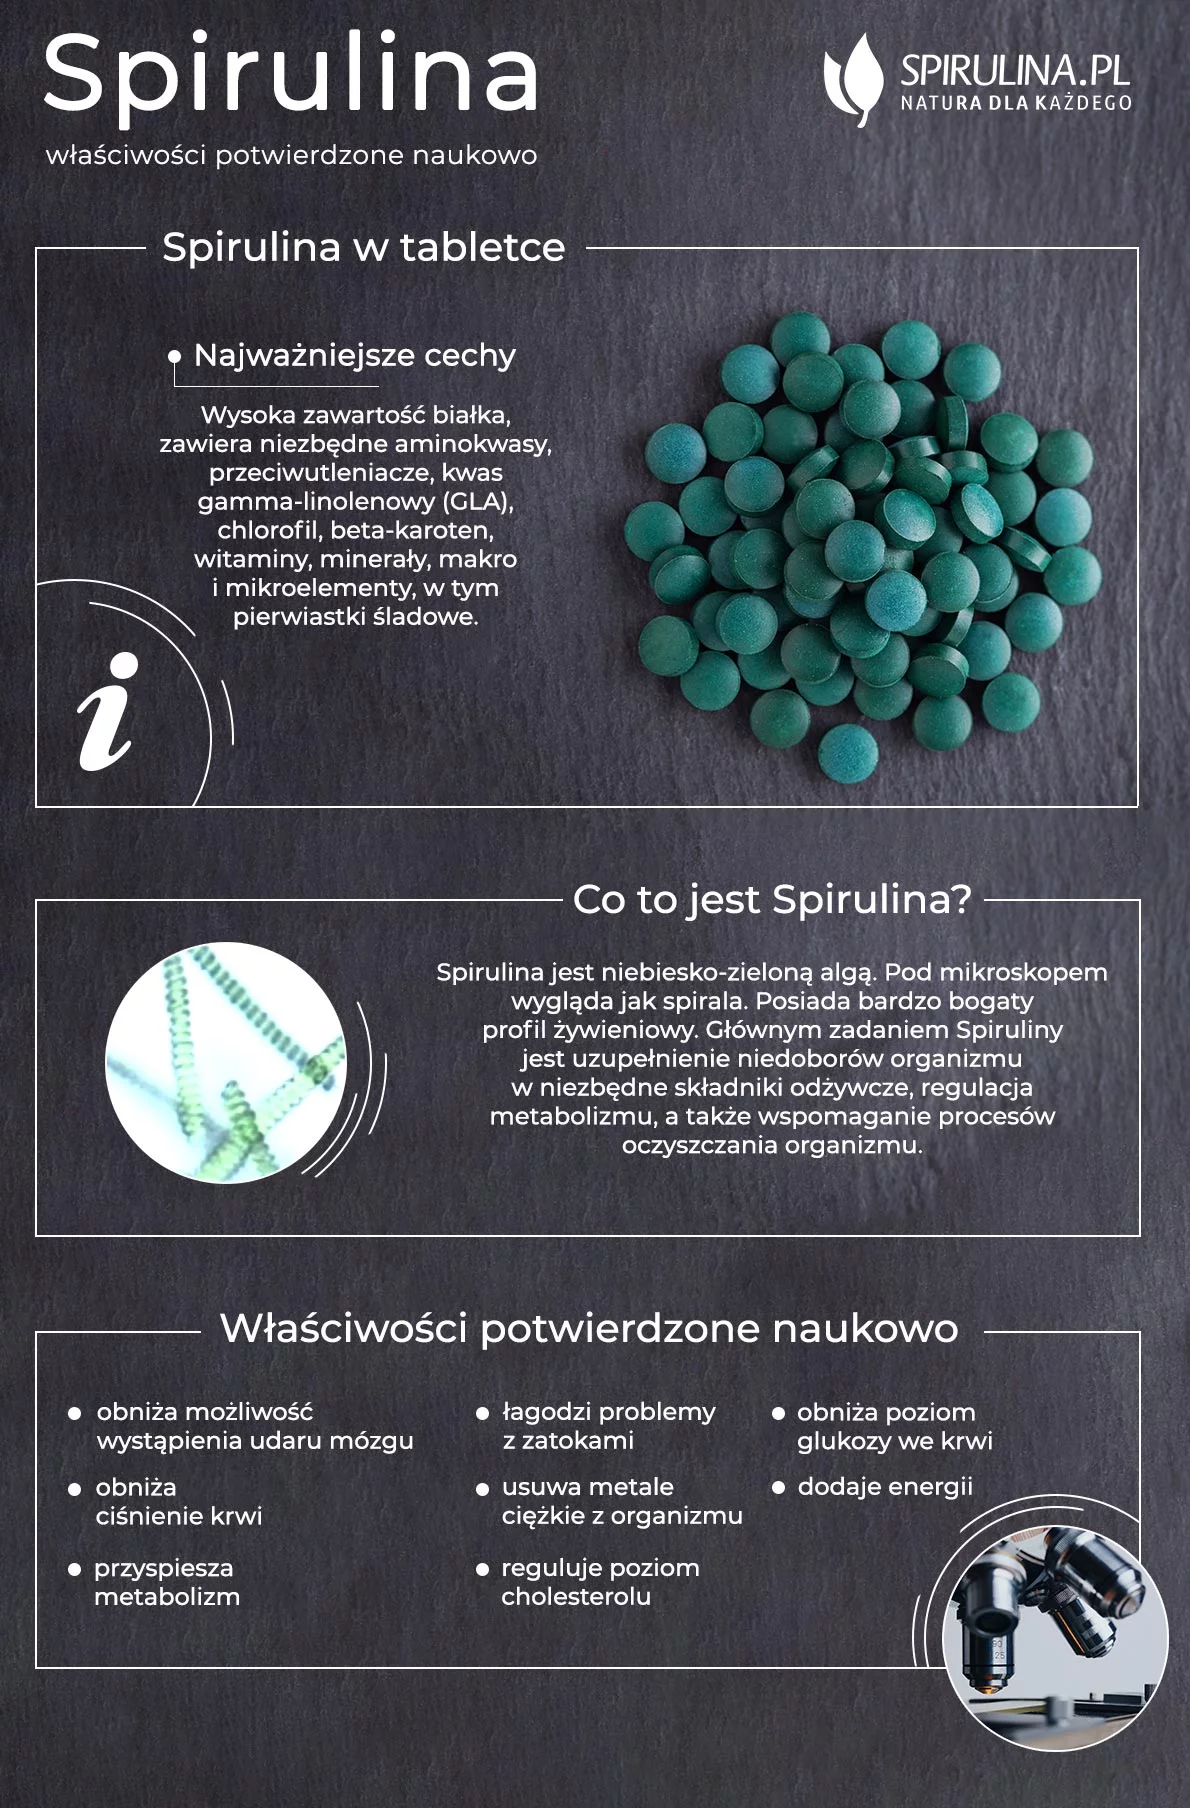 Spirulina - właściwości potwierdzone naukowo infografika